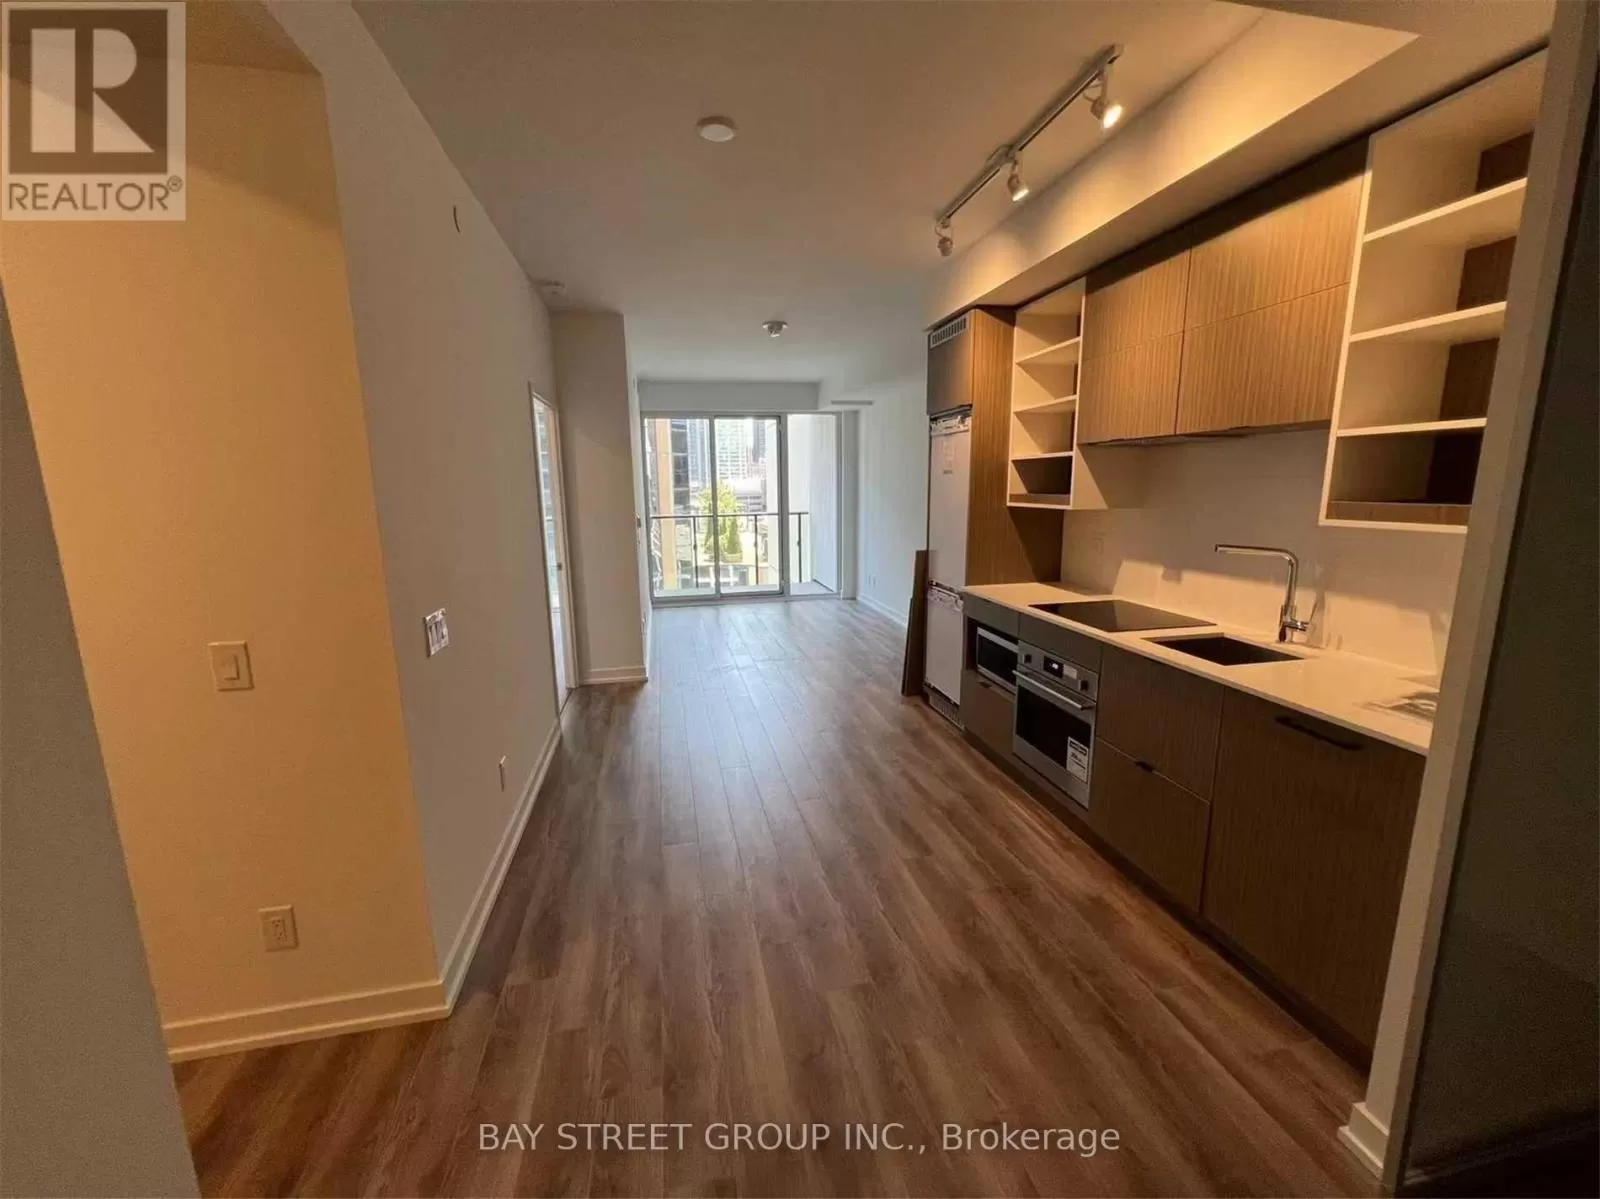 Apartment for rent: 1109 - 20 Edward Street, Toronto, Ontario M5G 1C9